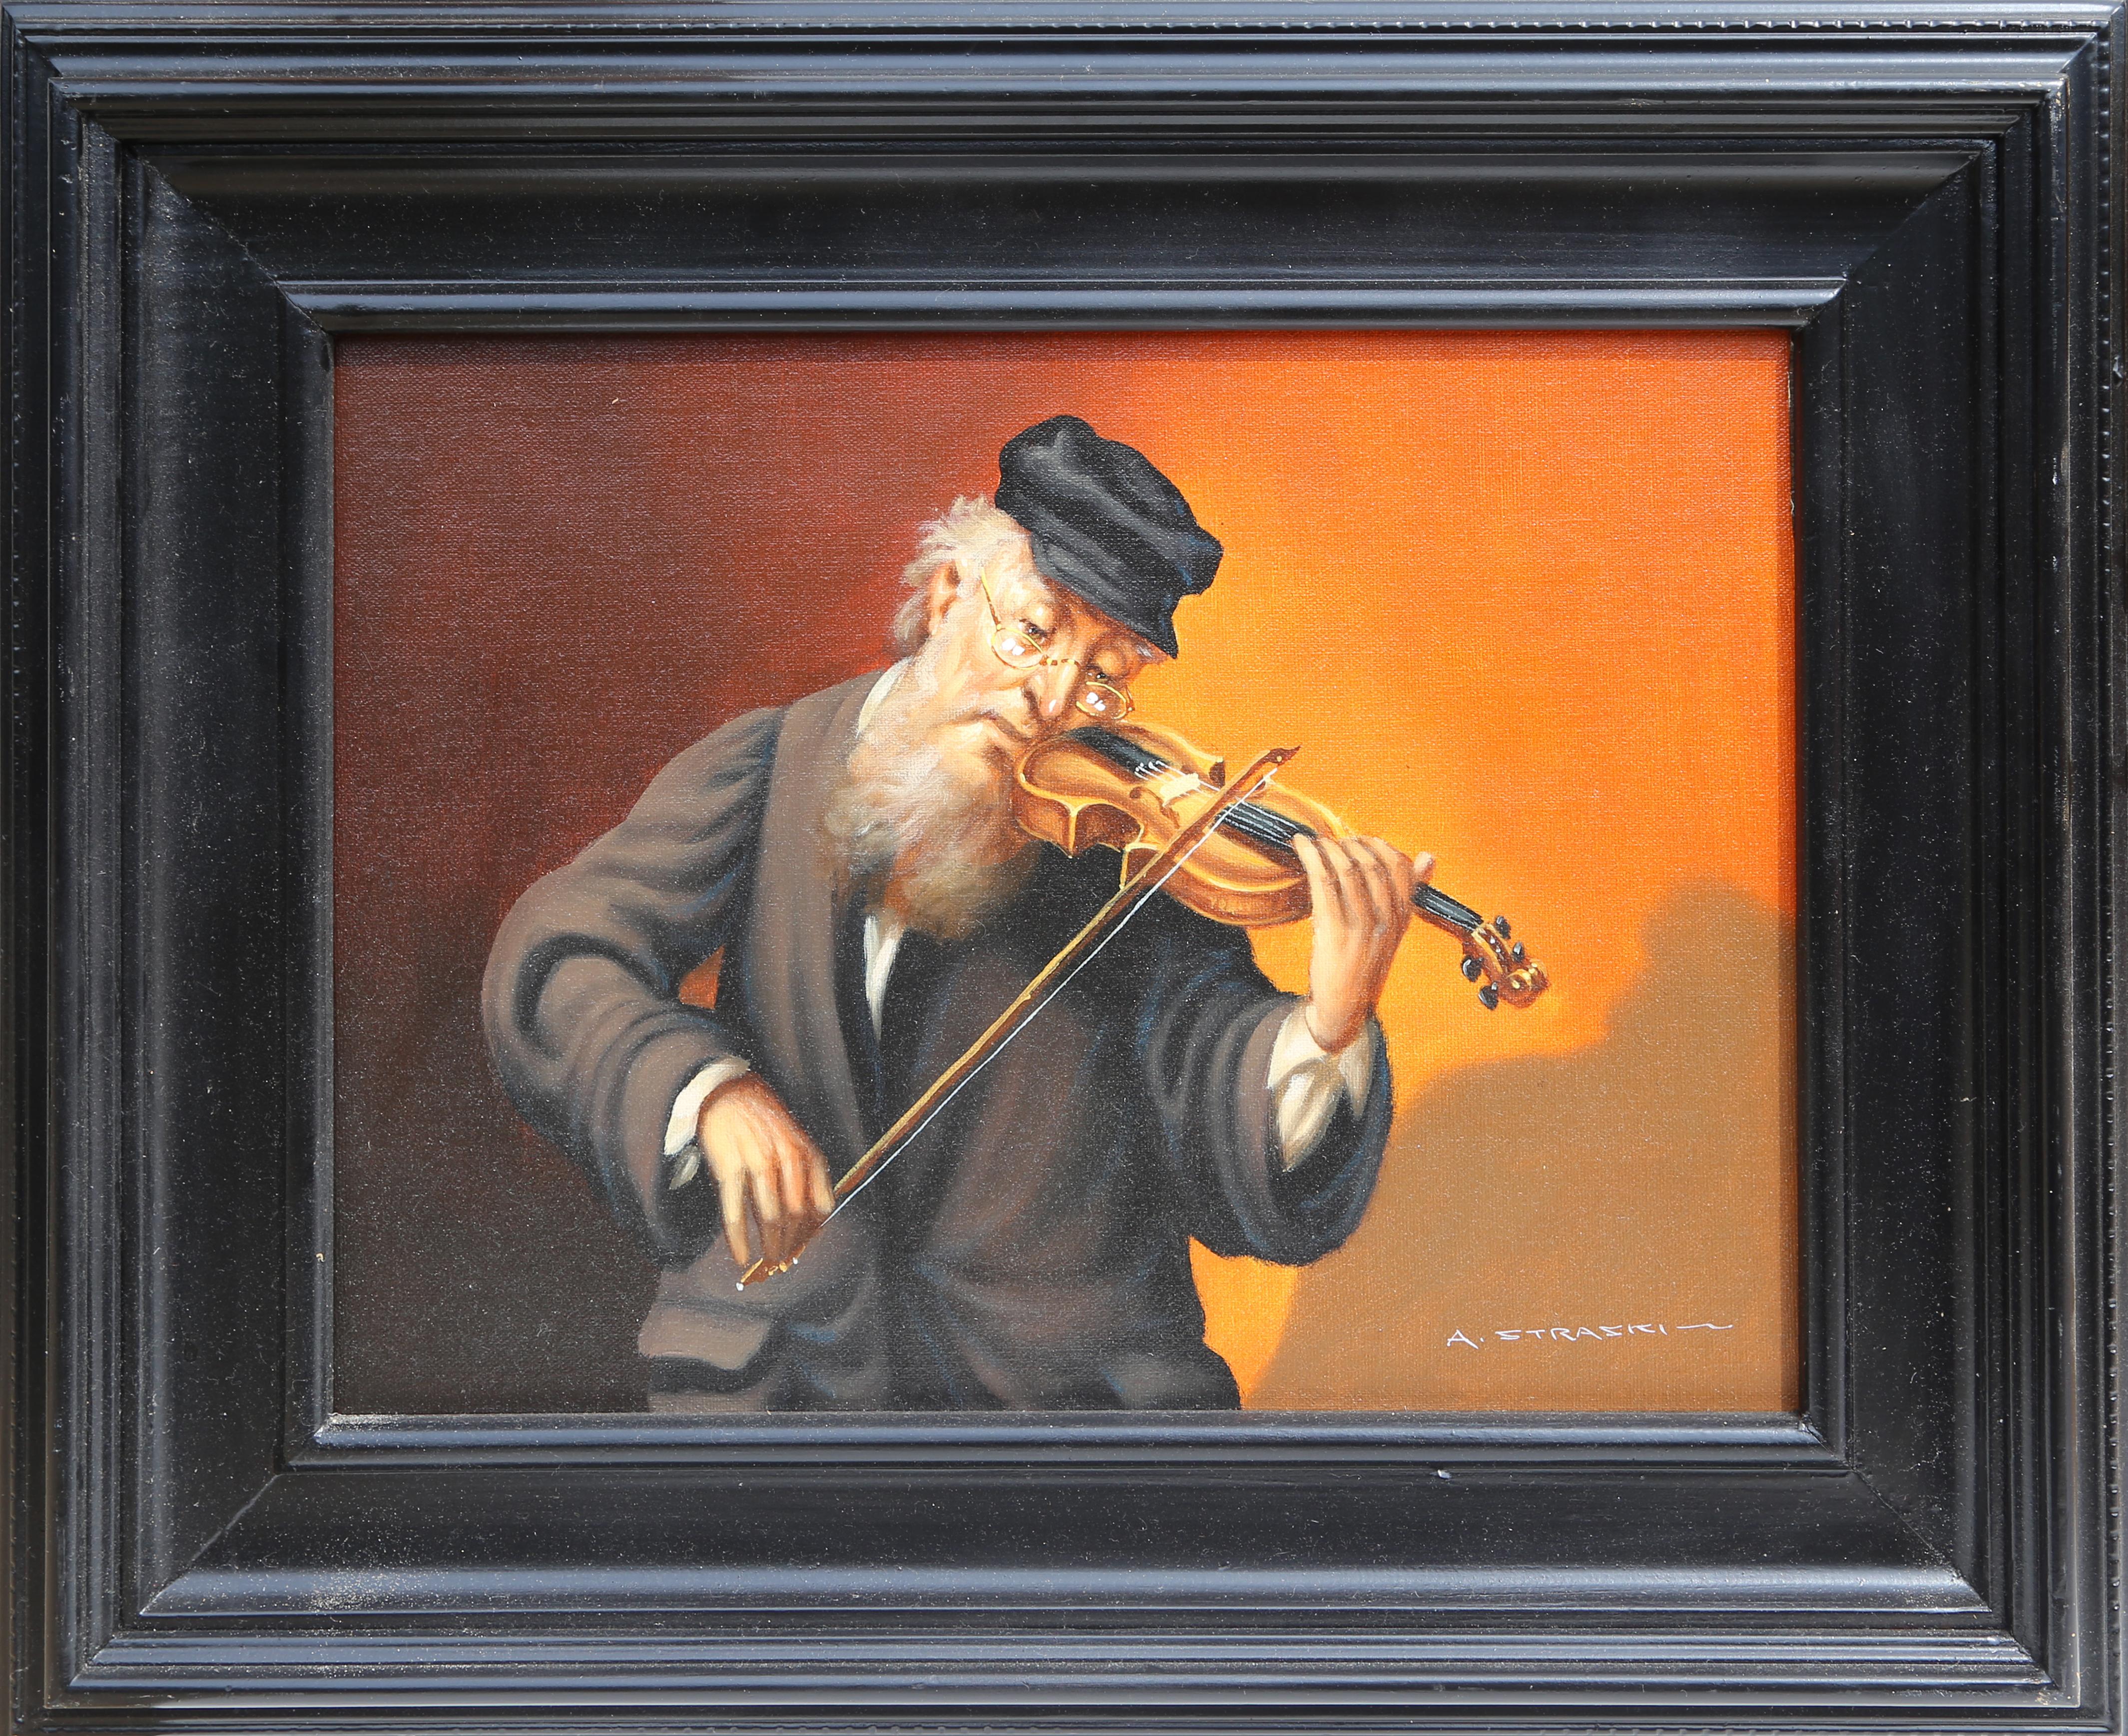 Artiste : Abraham Straski, polonais (1903 - 1987)
Titre : Violoniste
Année : 1958
Moyen : Huile sur toile, signé à gauche.
Taille de l'image :  12 x 15 pouces
Taille du cadre : 20 x 22.5 pouces
